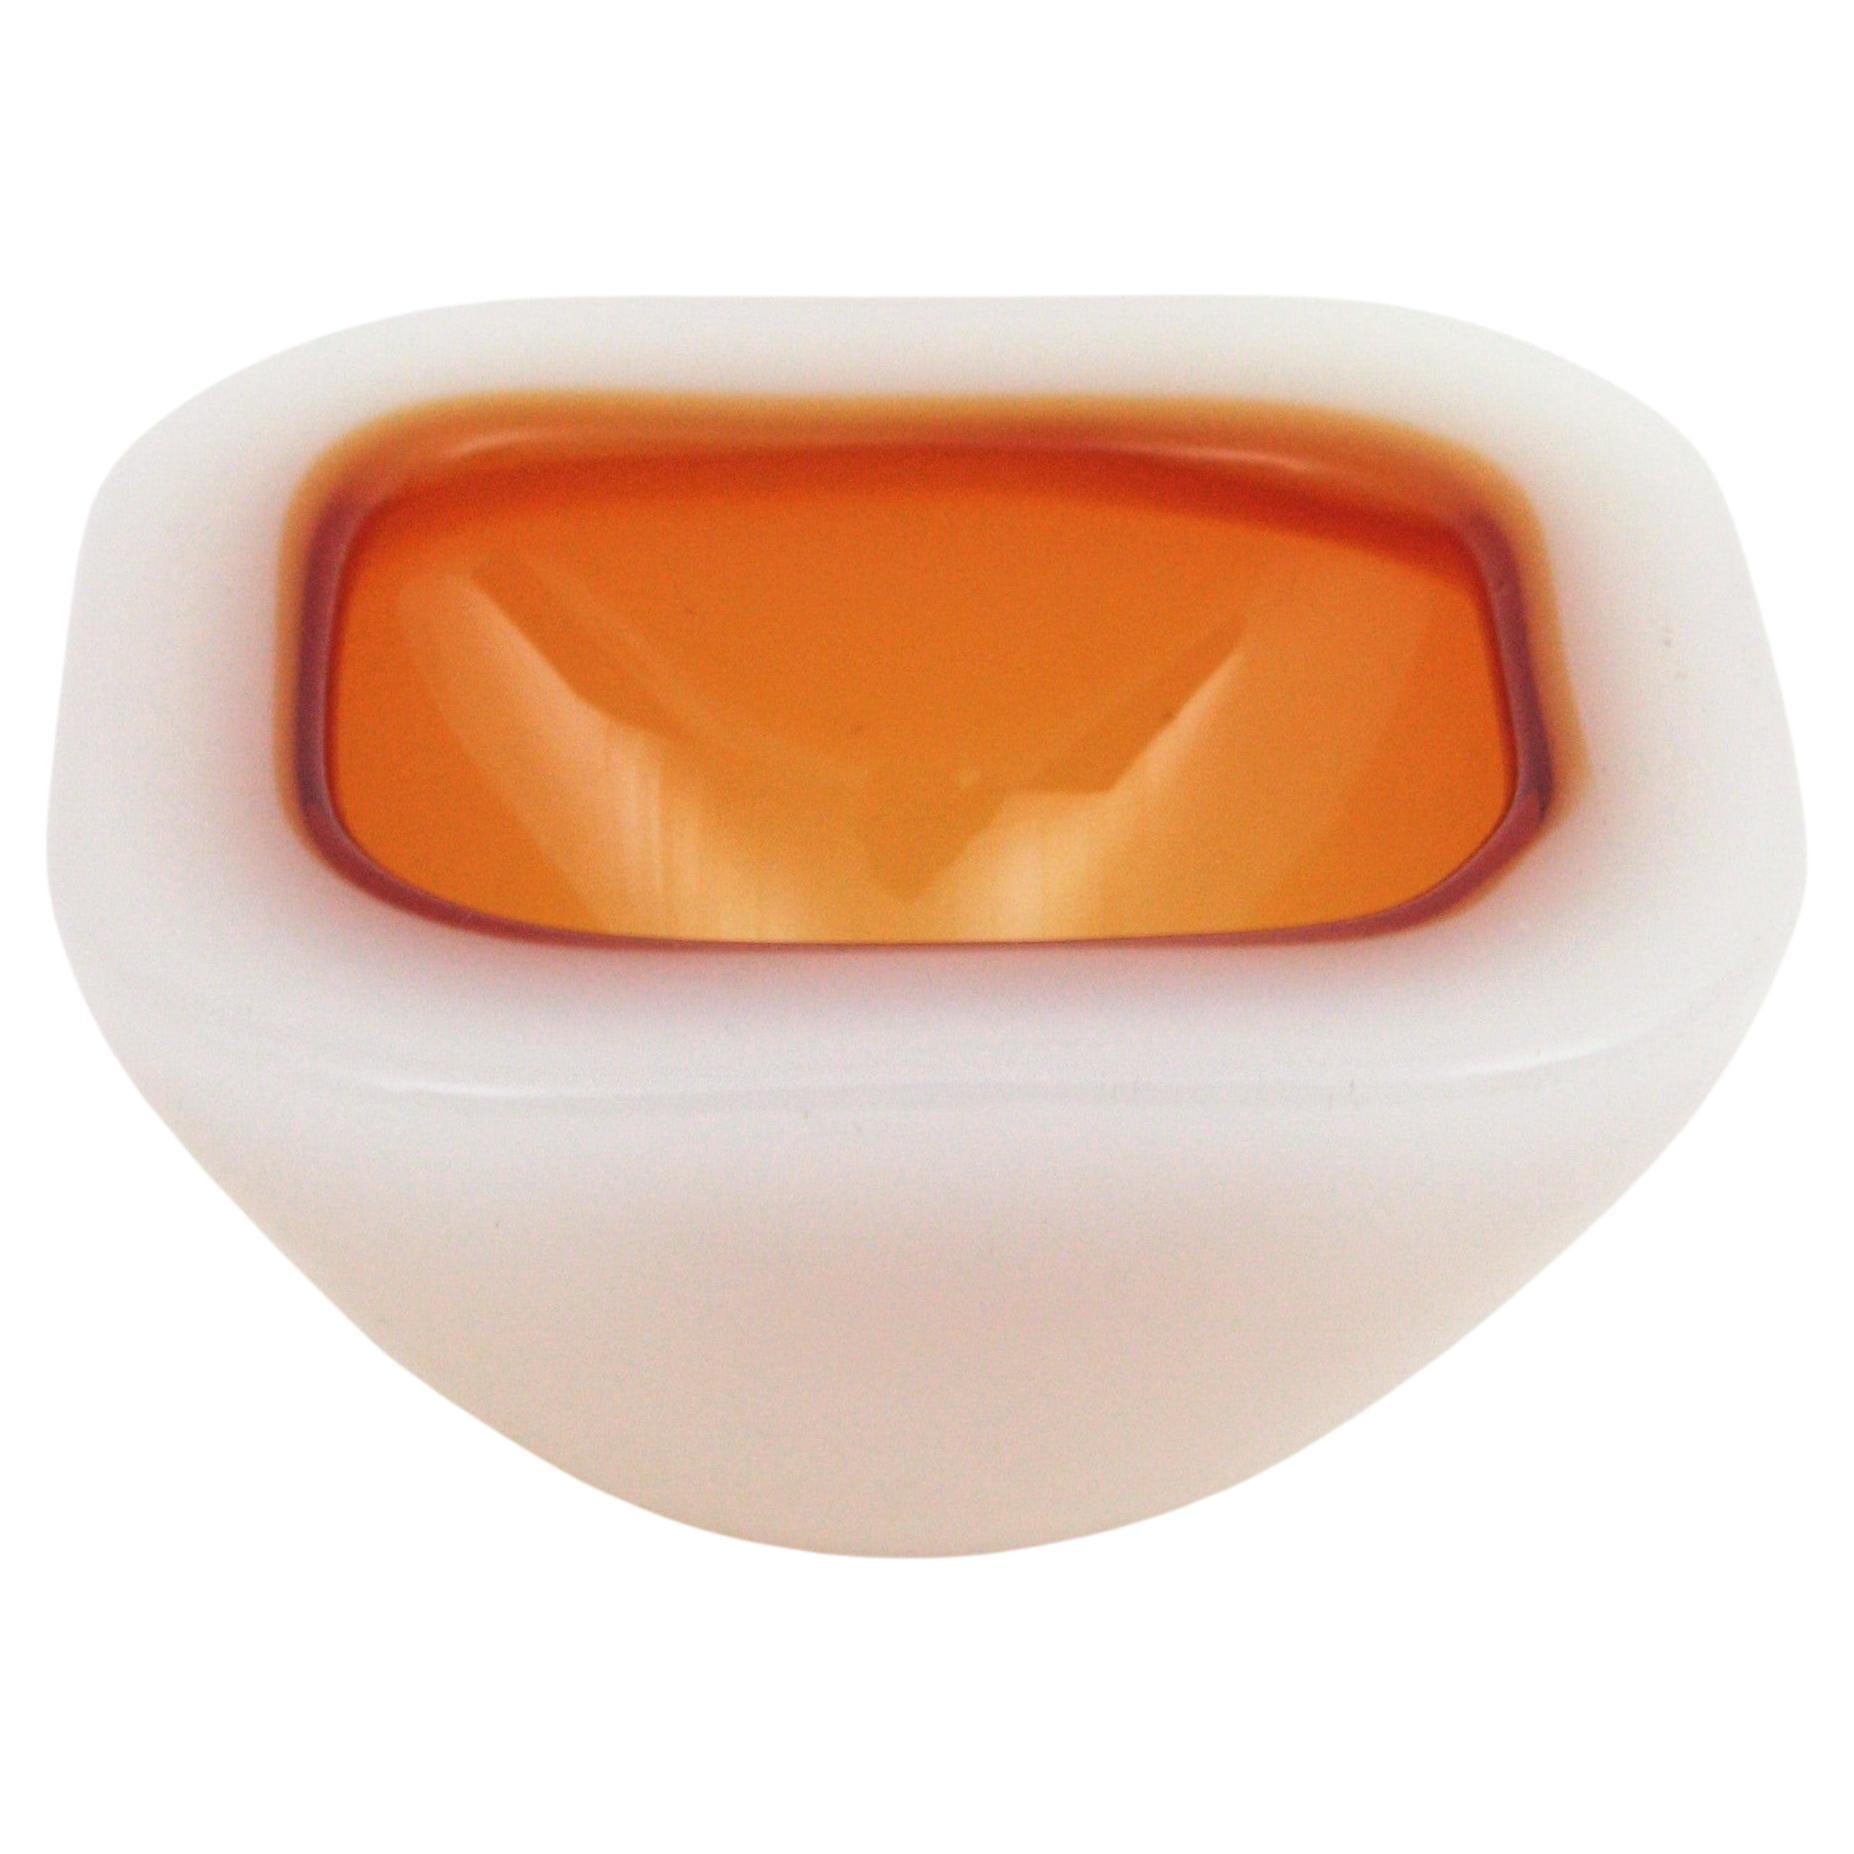 Schale aus mundgeblasenem Murano-Glas mit bernsteinfarbener und weißer Sommerso-Geode, zugeschrieben Archimede Seguso, Italien, 1950er Jahre.
Diese Alabastro-Schale hat einen auffälligen Innenteil aus orangefarbenem / bernsteinfarbenem Glas.